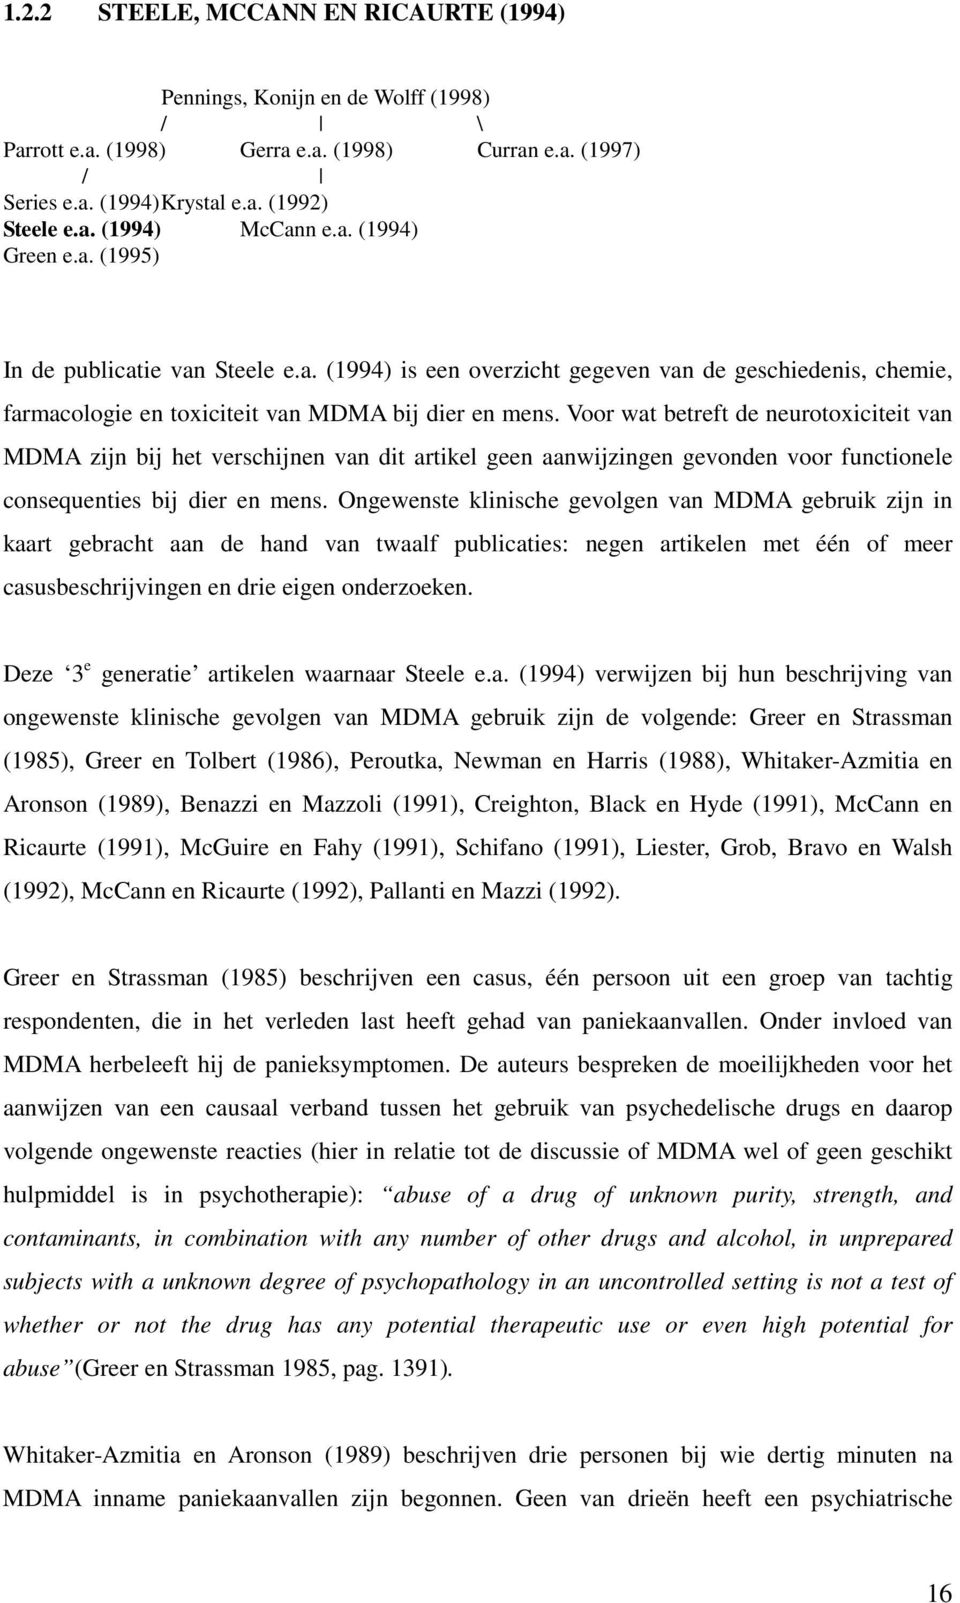 Voor wat betreft de neurotoxiciteit van MDMA zijn bij het verschijnen van dit artikel geen aanwijzingen gevonden voor functionele consequenties bij dier en mens.